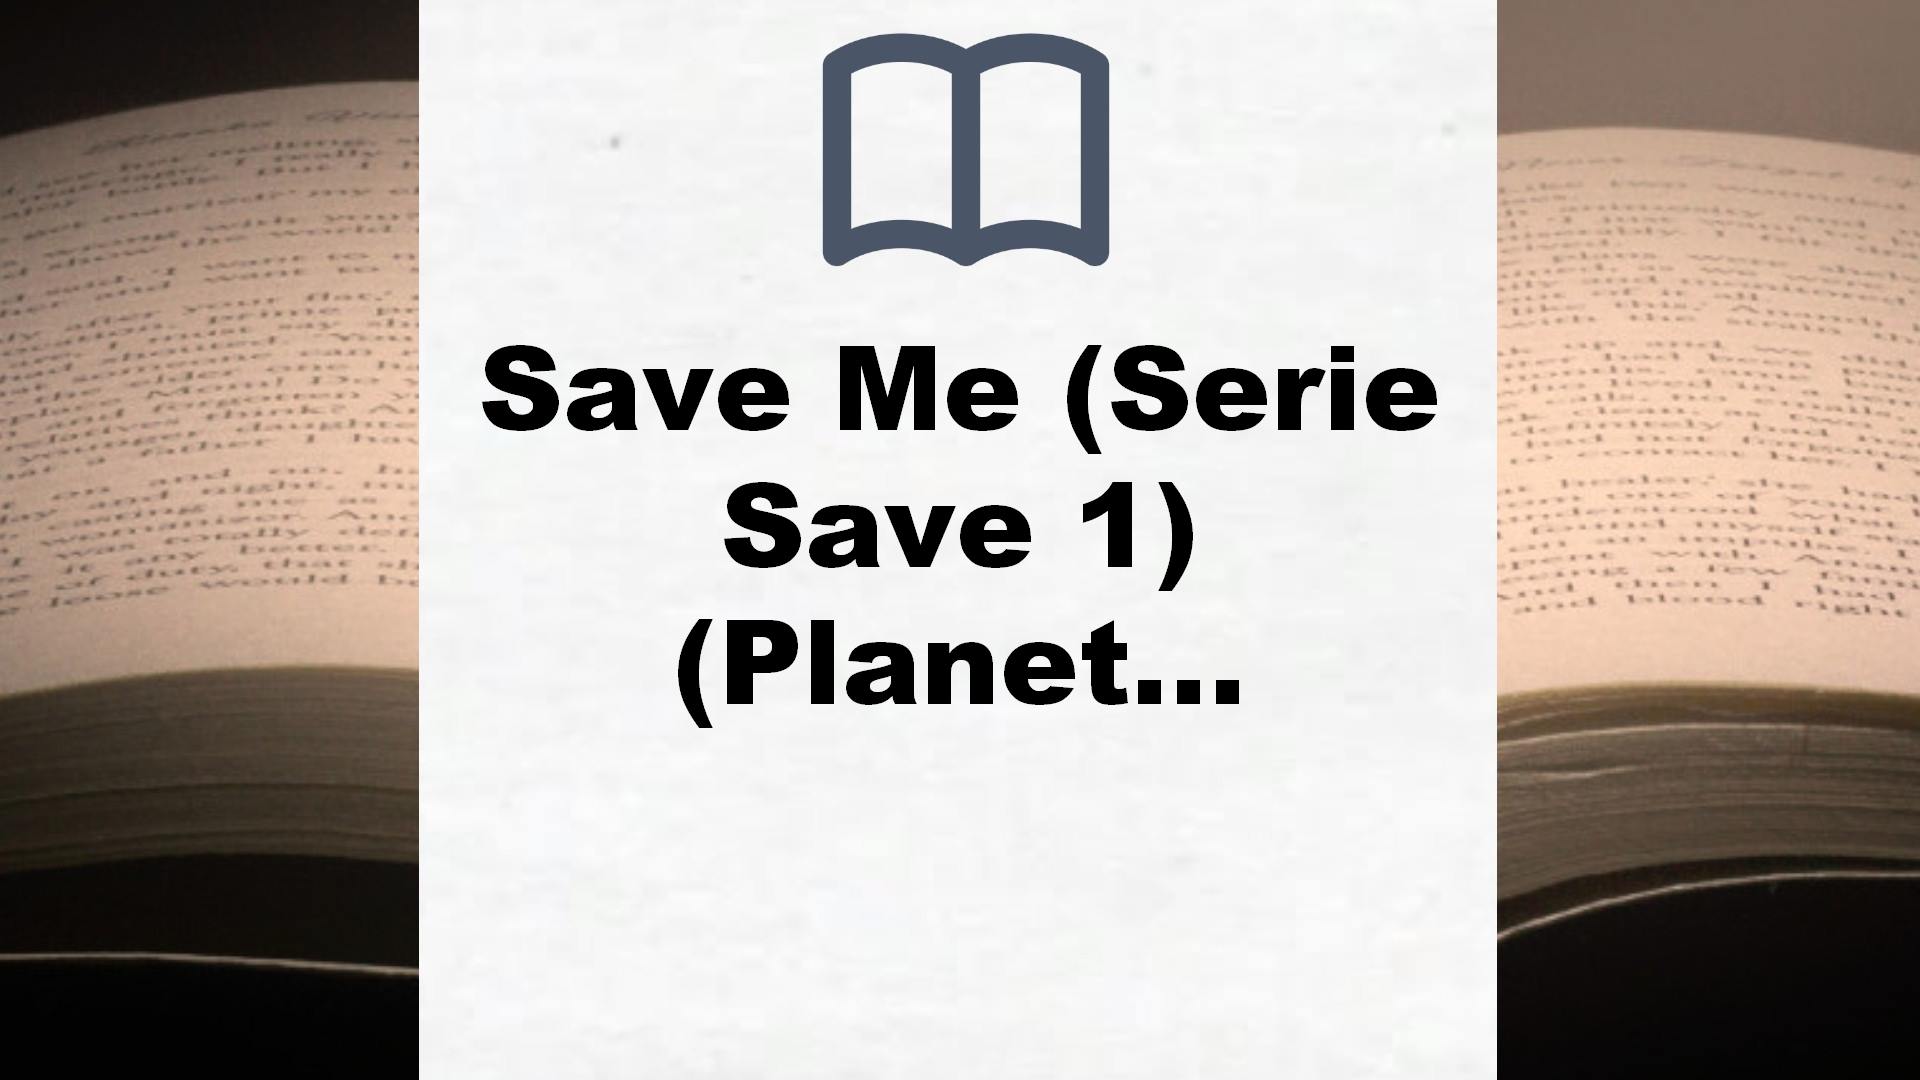 Save Me (Serie Save 1) (Planeta Internacional) – Reseña del libro